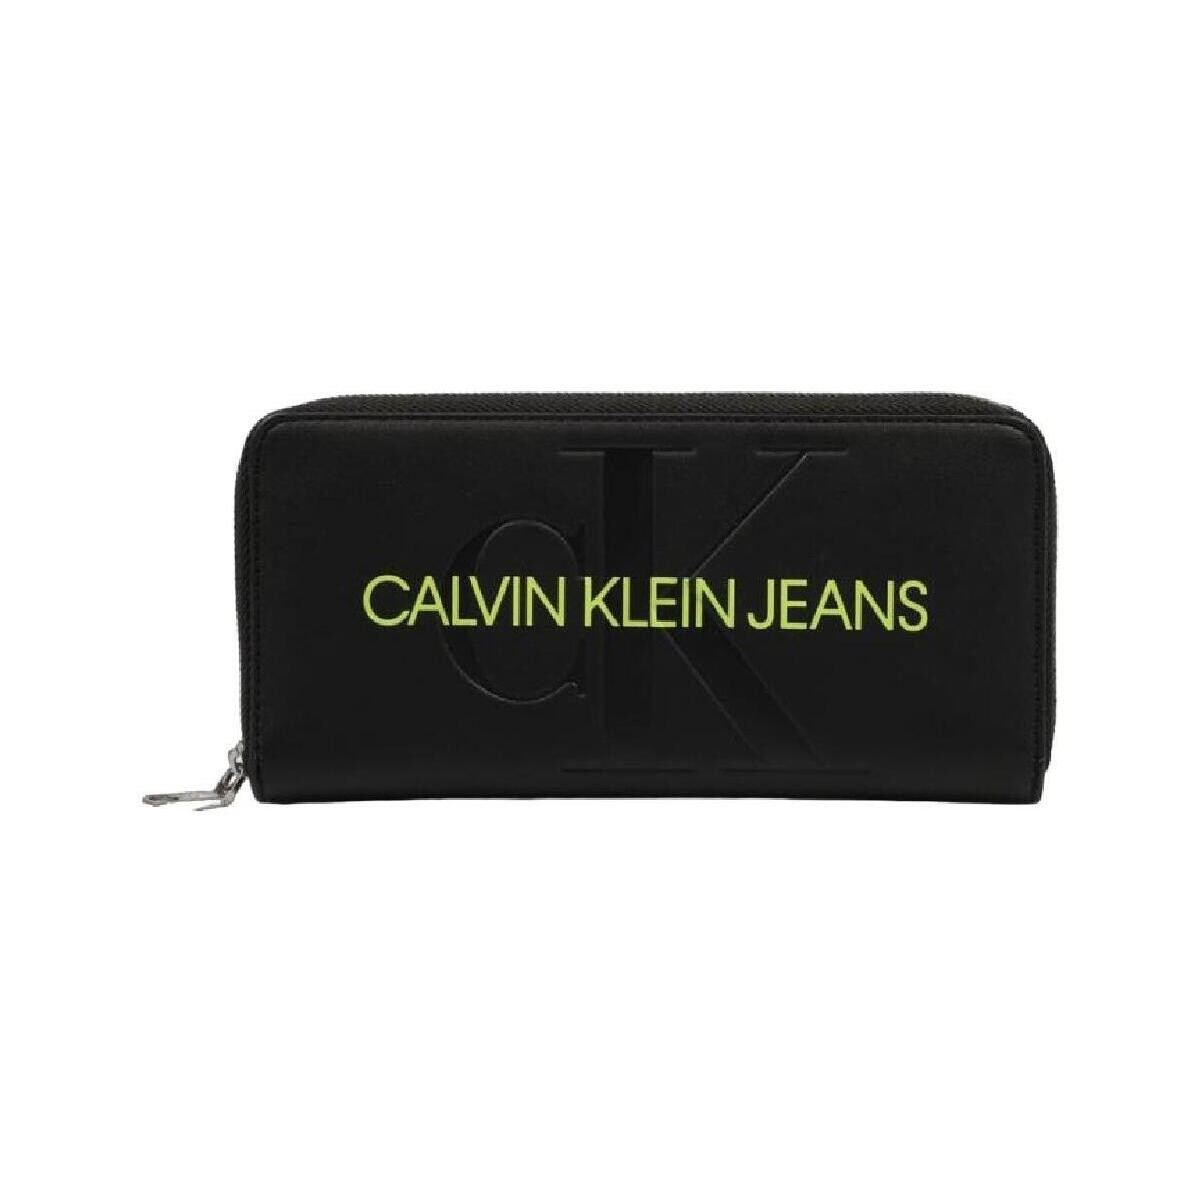 Borse Donna Borse Calvin Klein Jeans  Nero